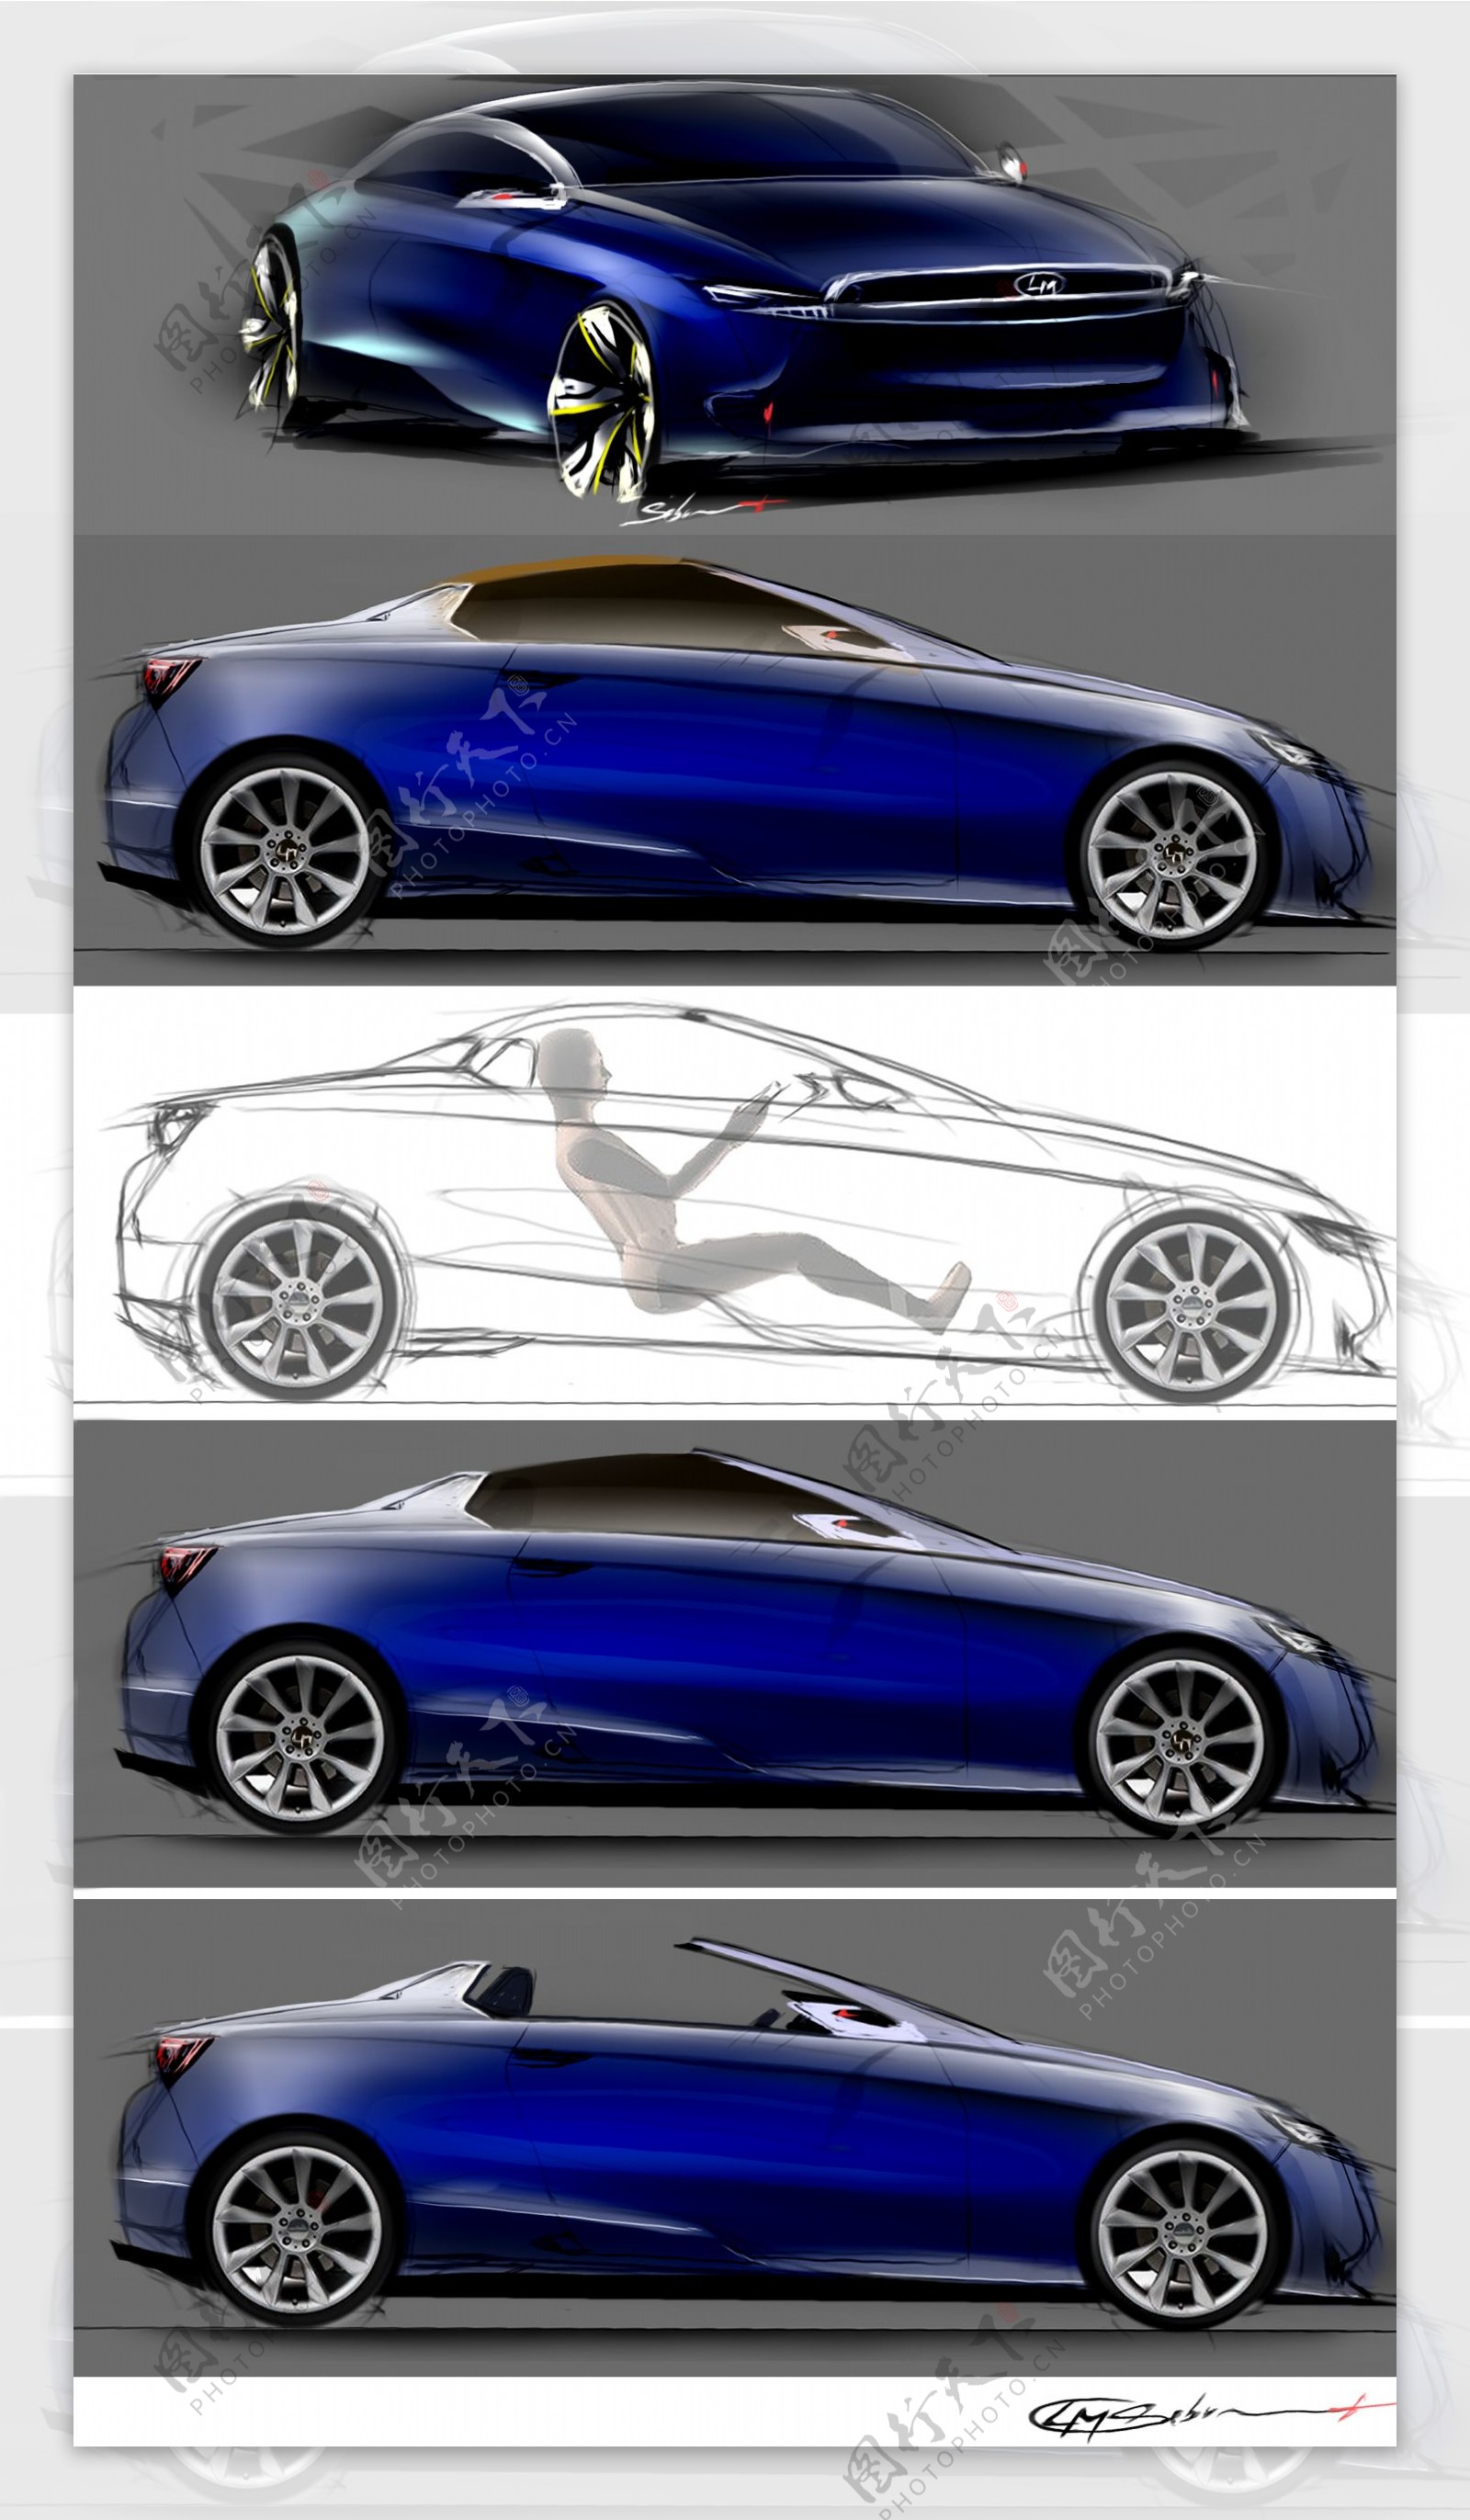 SL跑车的设计托伊亚诺夫塞巴斯蒂安工作2013